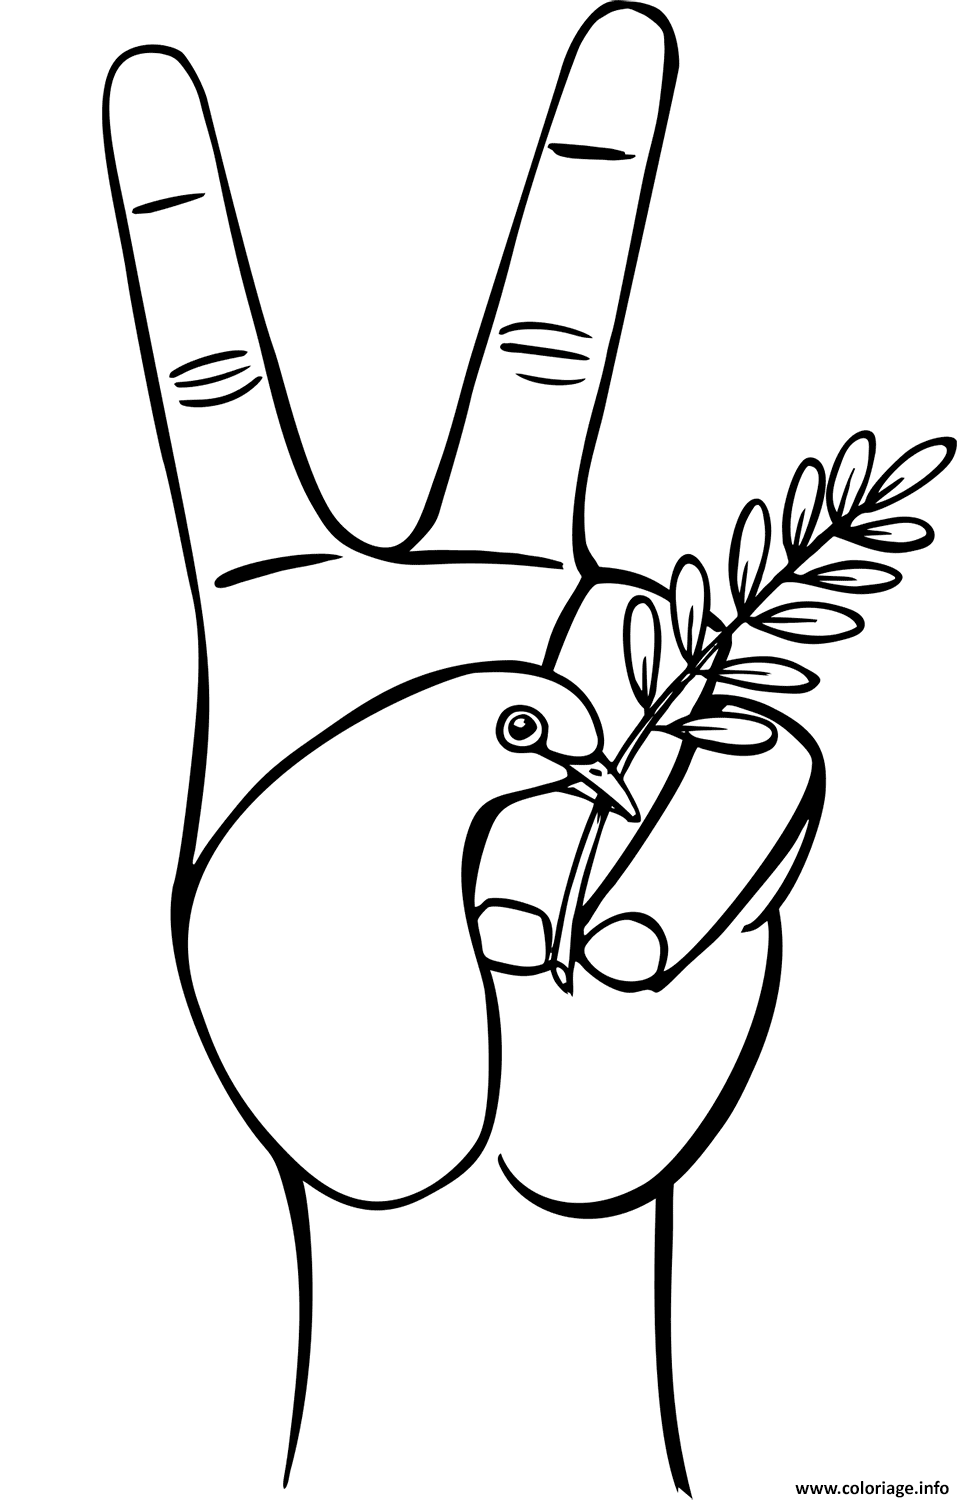 Dessin symbole paix V avec la main oiseau blanc et branche olive Coloriage Gratuit à Imprimer